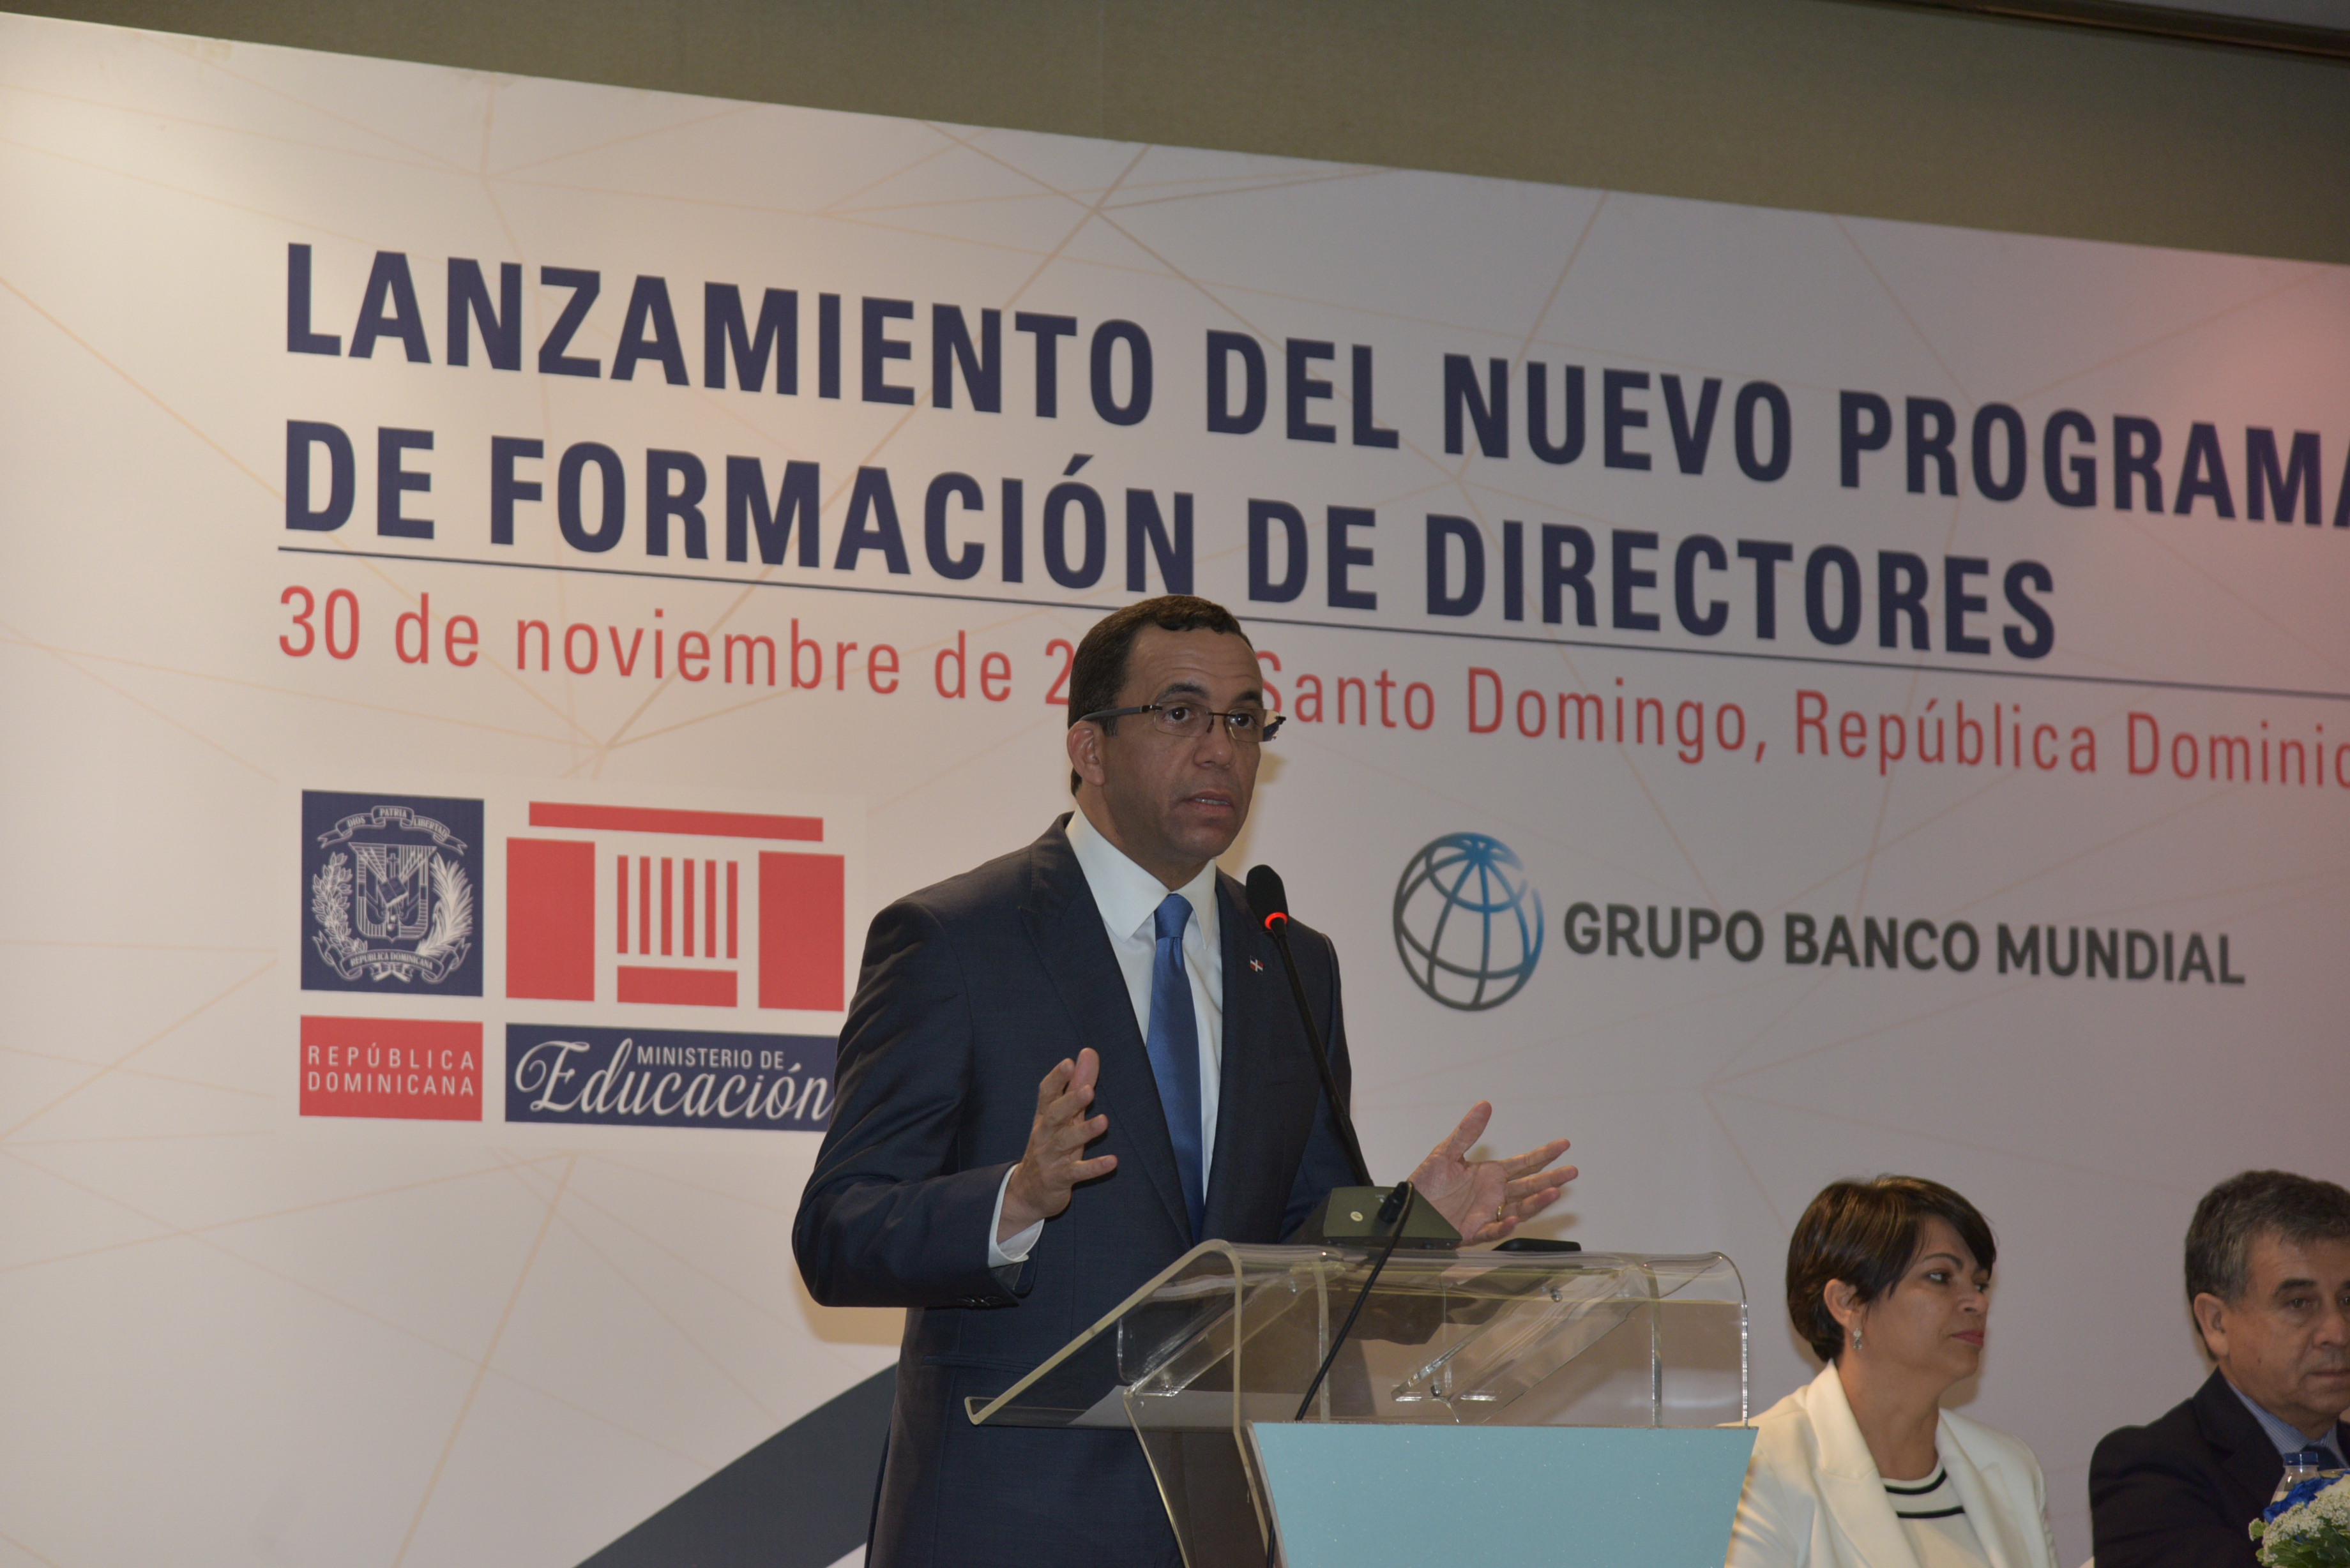  imagen Ministro Andrés Navarro de pie en podium se dirige a cientos de personas en lanzamiento de programa de formación de nuevos directores de escuelas  